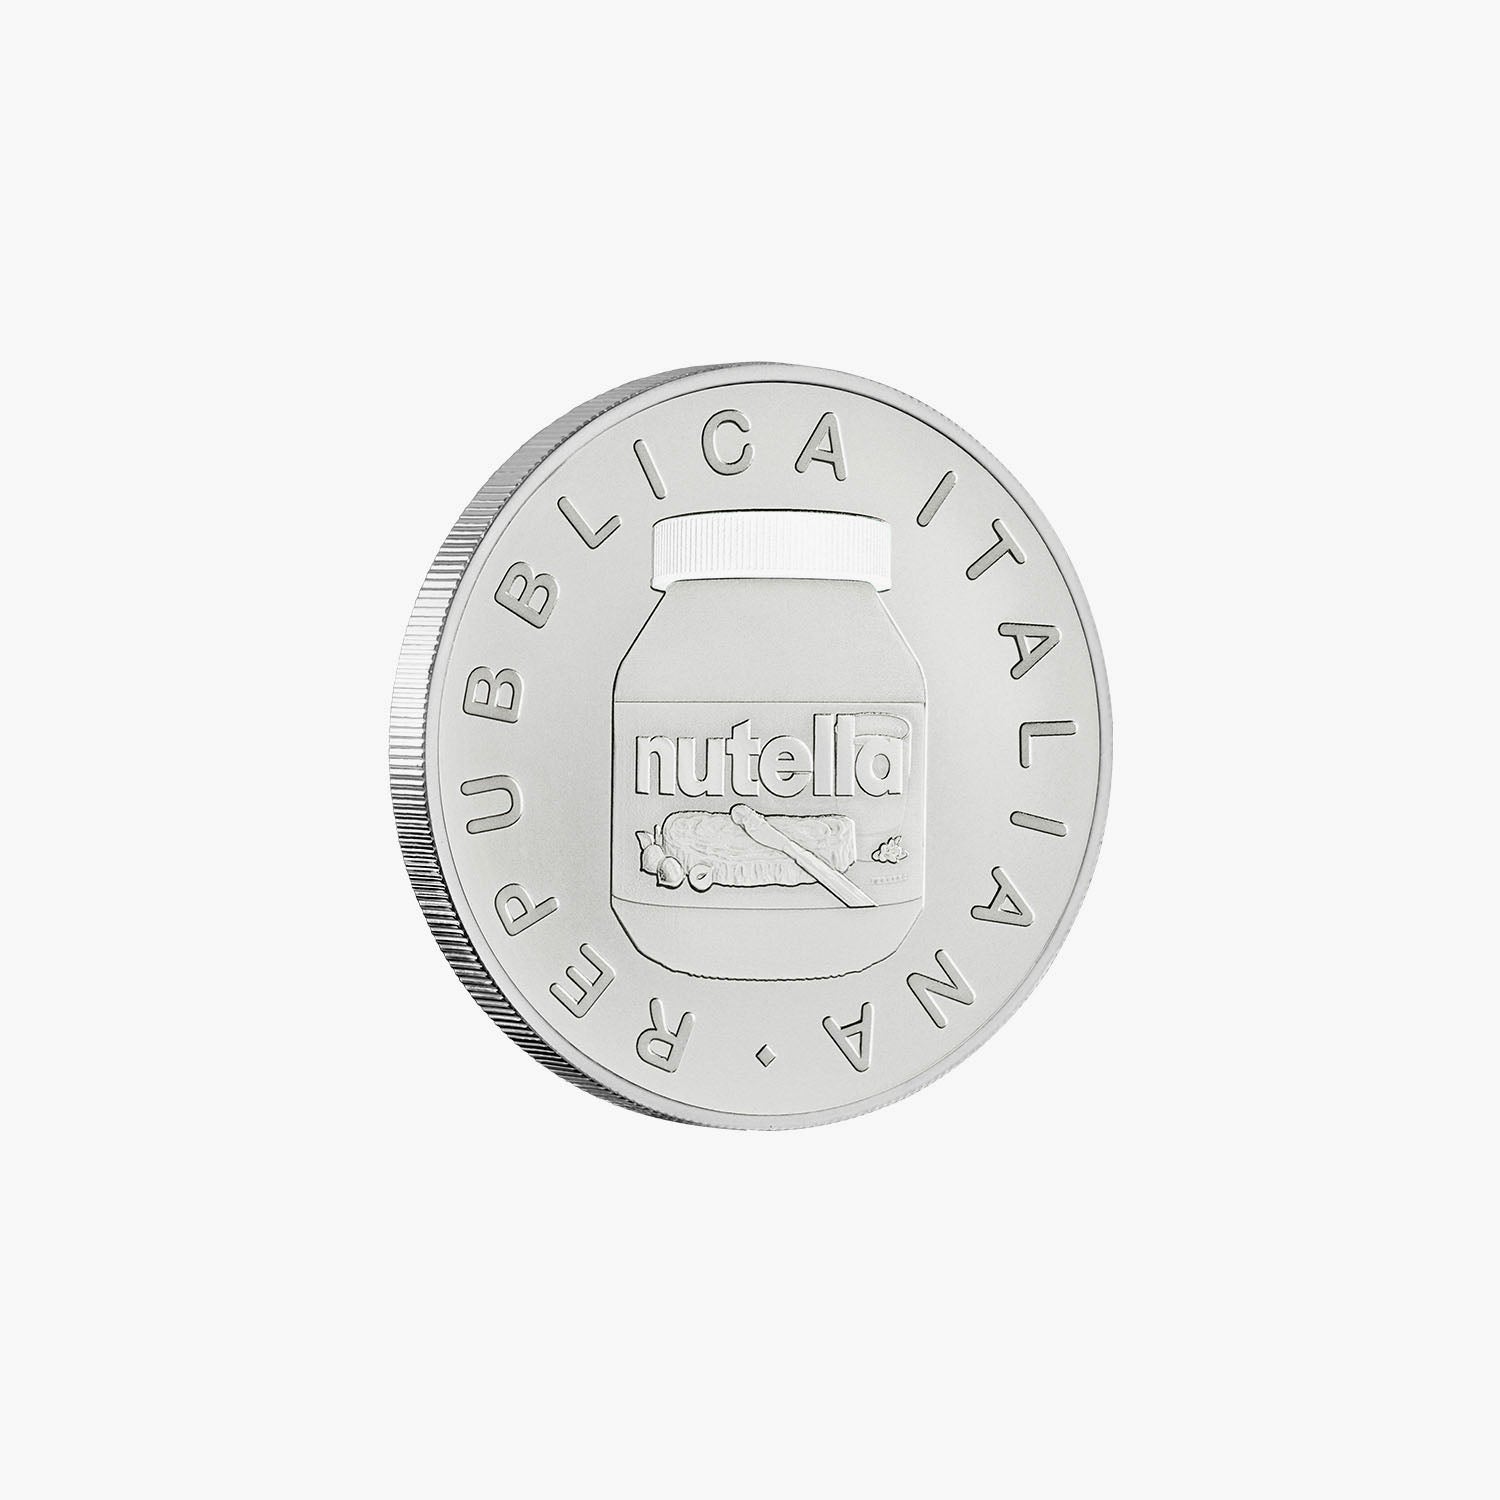 The Nutella 75th Anniversary Italian Coin Set